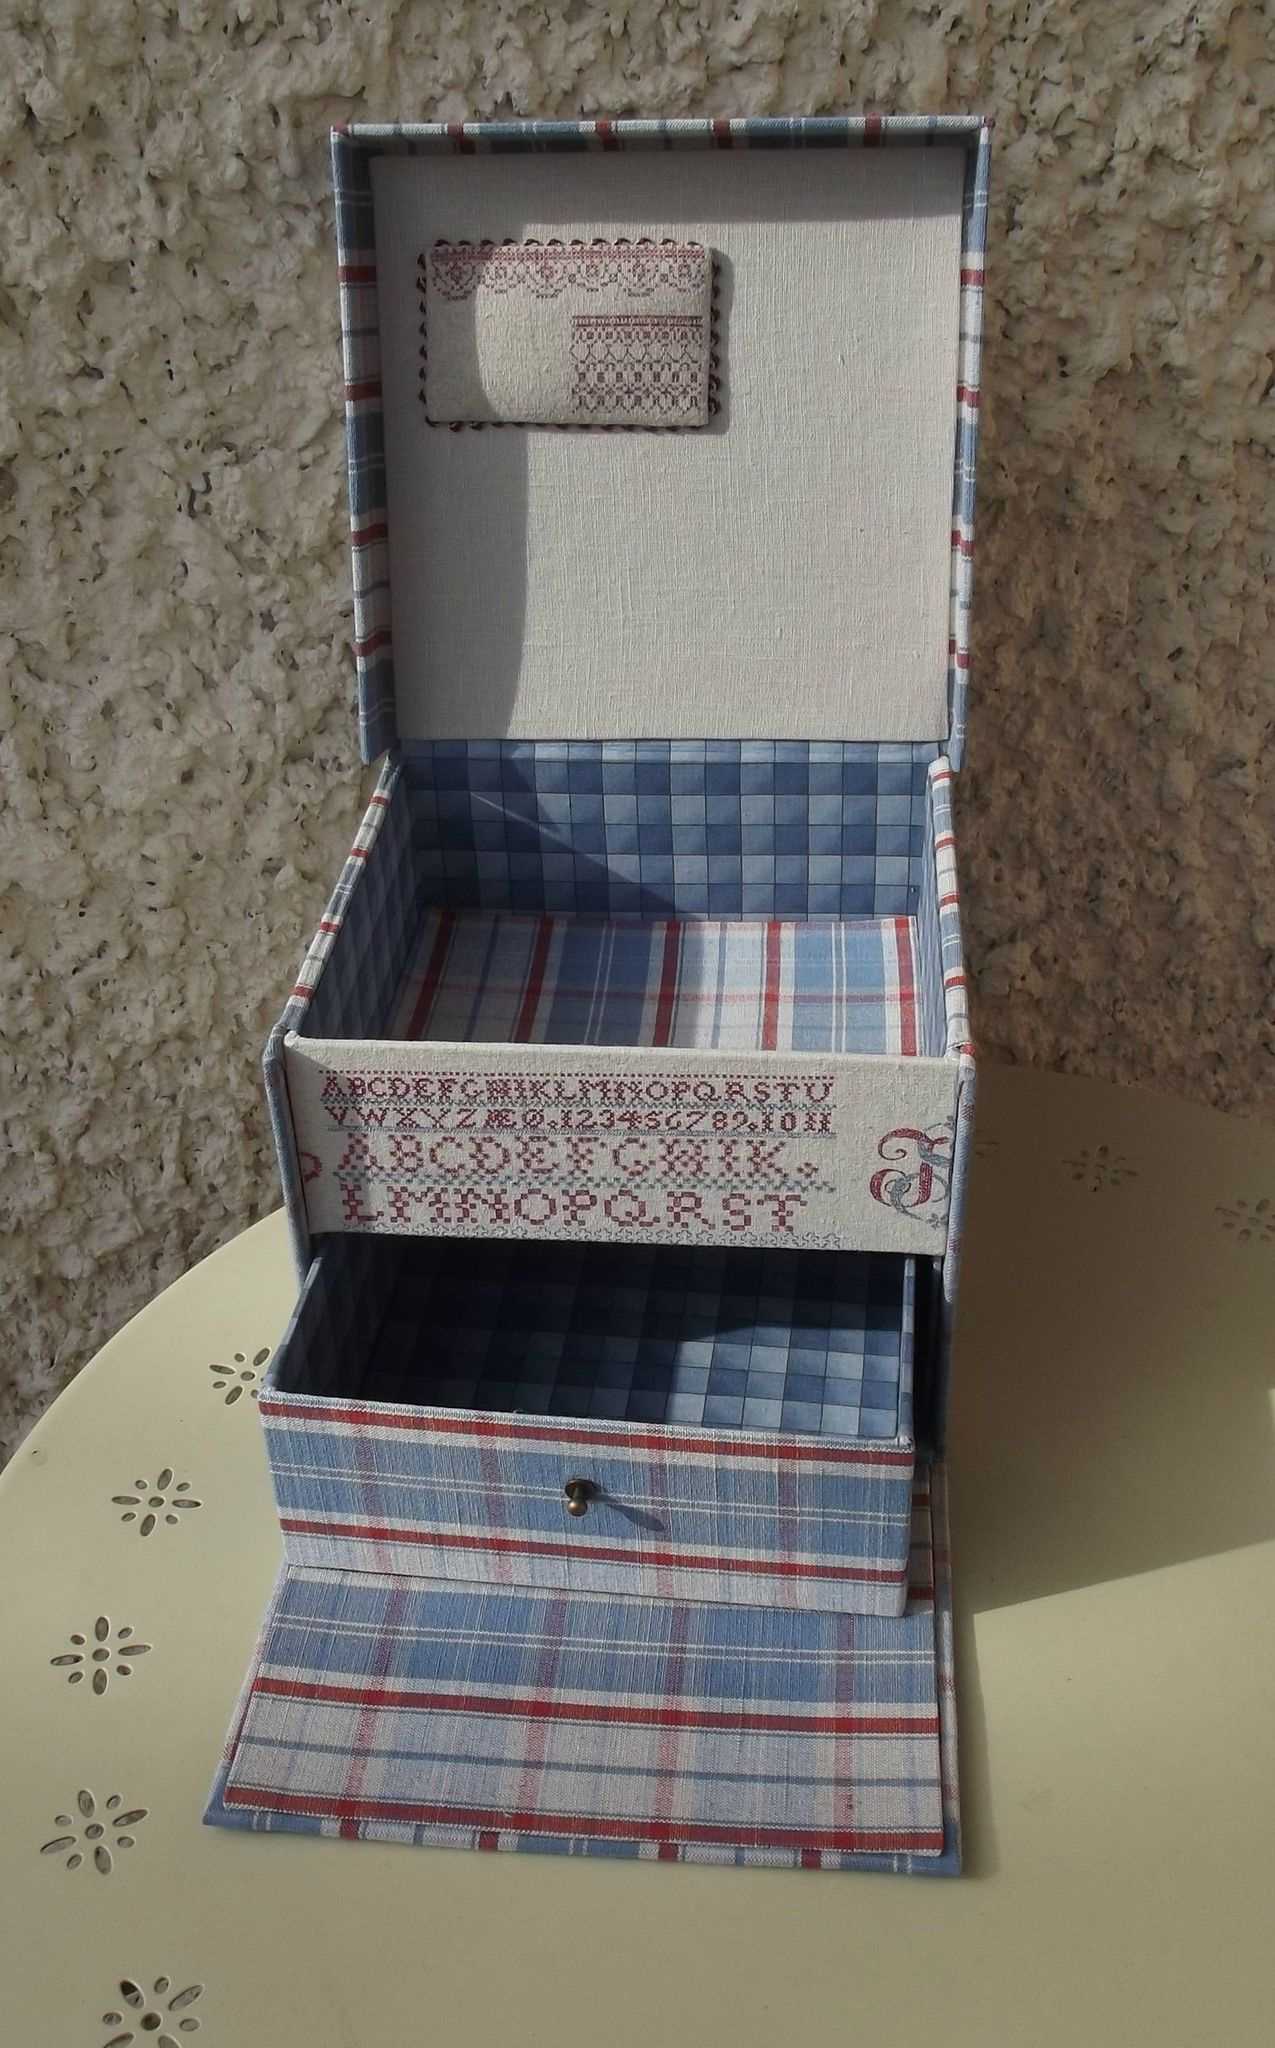 décoration originale de boîtes de rangement avec des matériaux improvisés